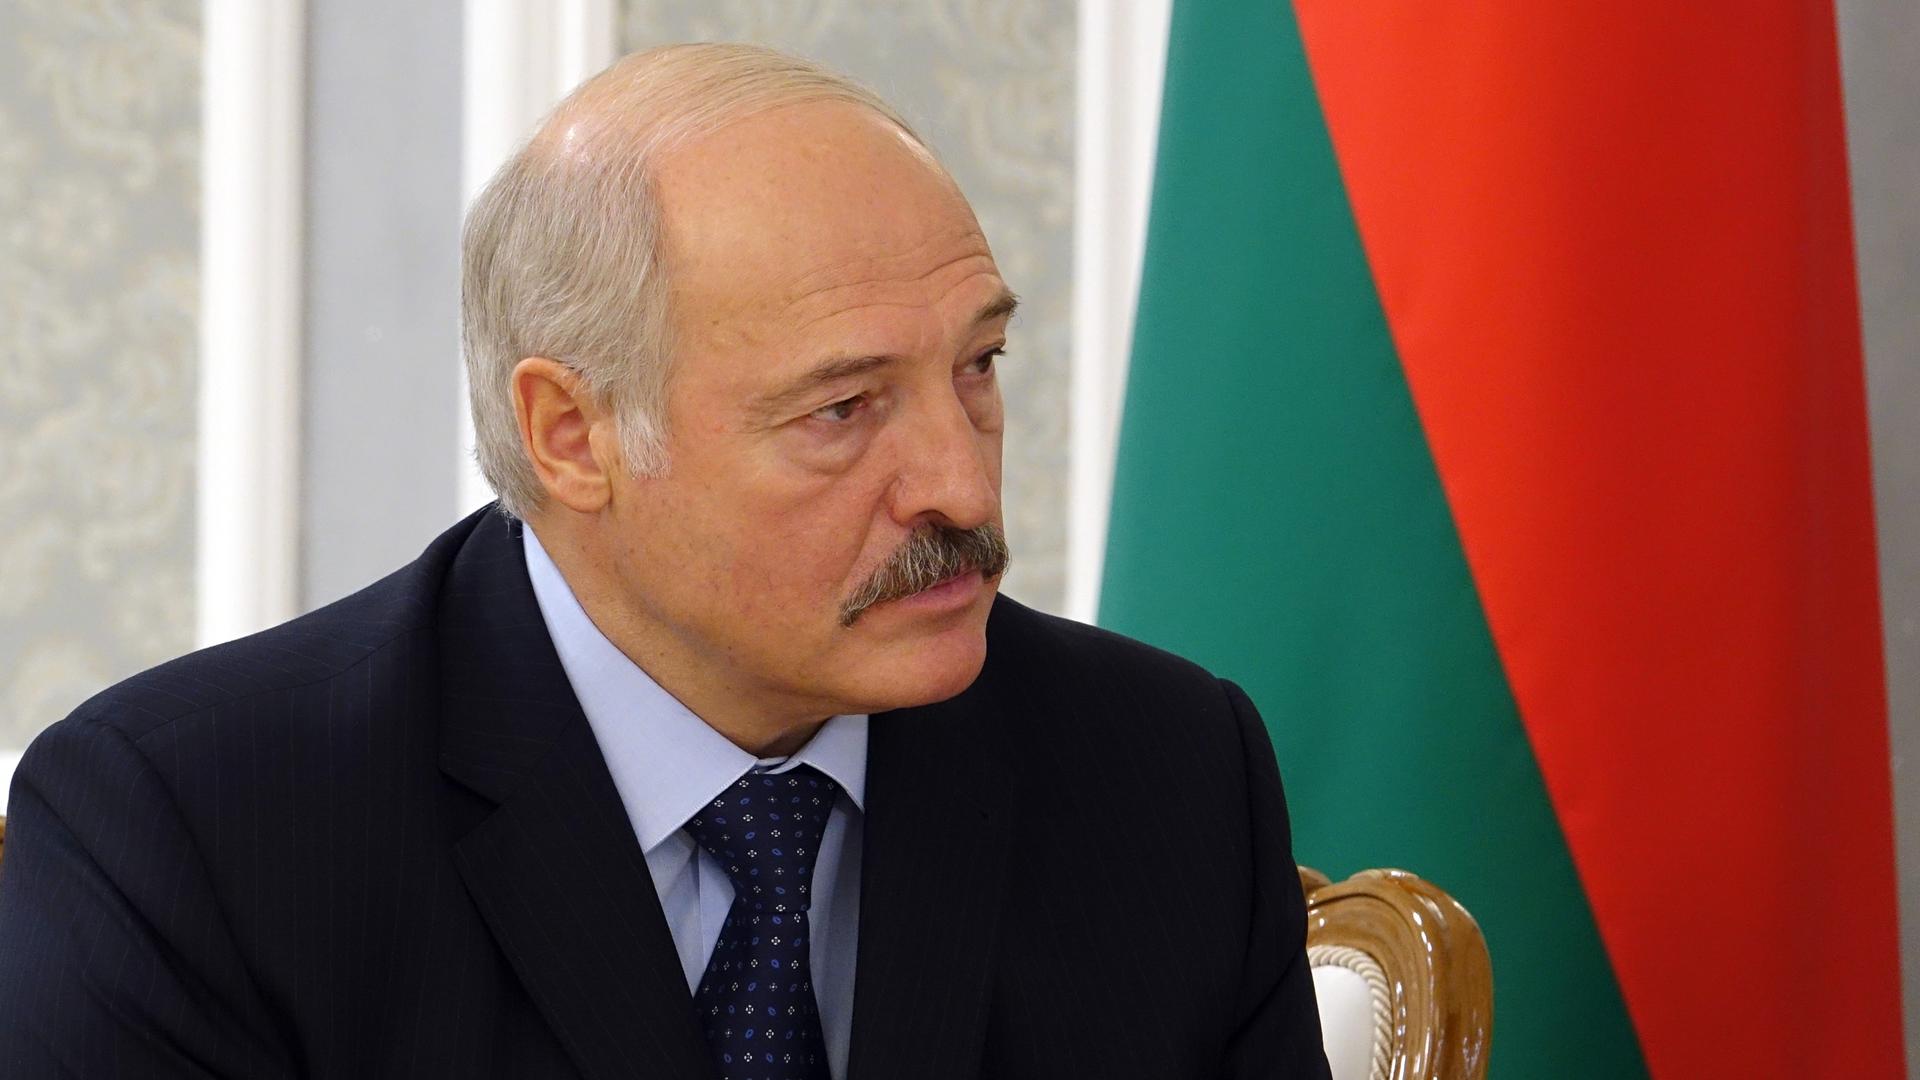 Der weißrussische Präsident Alexander Lukaschenko unterhält sich am 17.01.2017 in Minsk mit BundesauÃenminister Gabriel (nicht im Bild). Foto: Friedemann Kohler/dpa ++